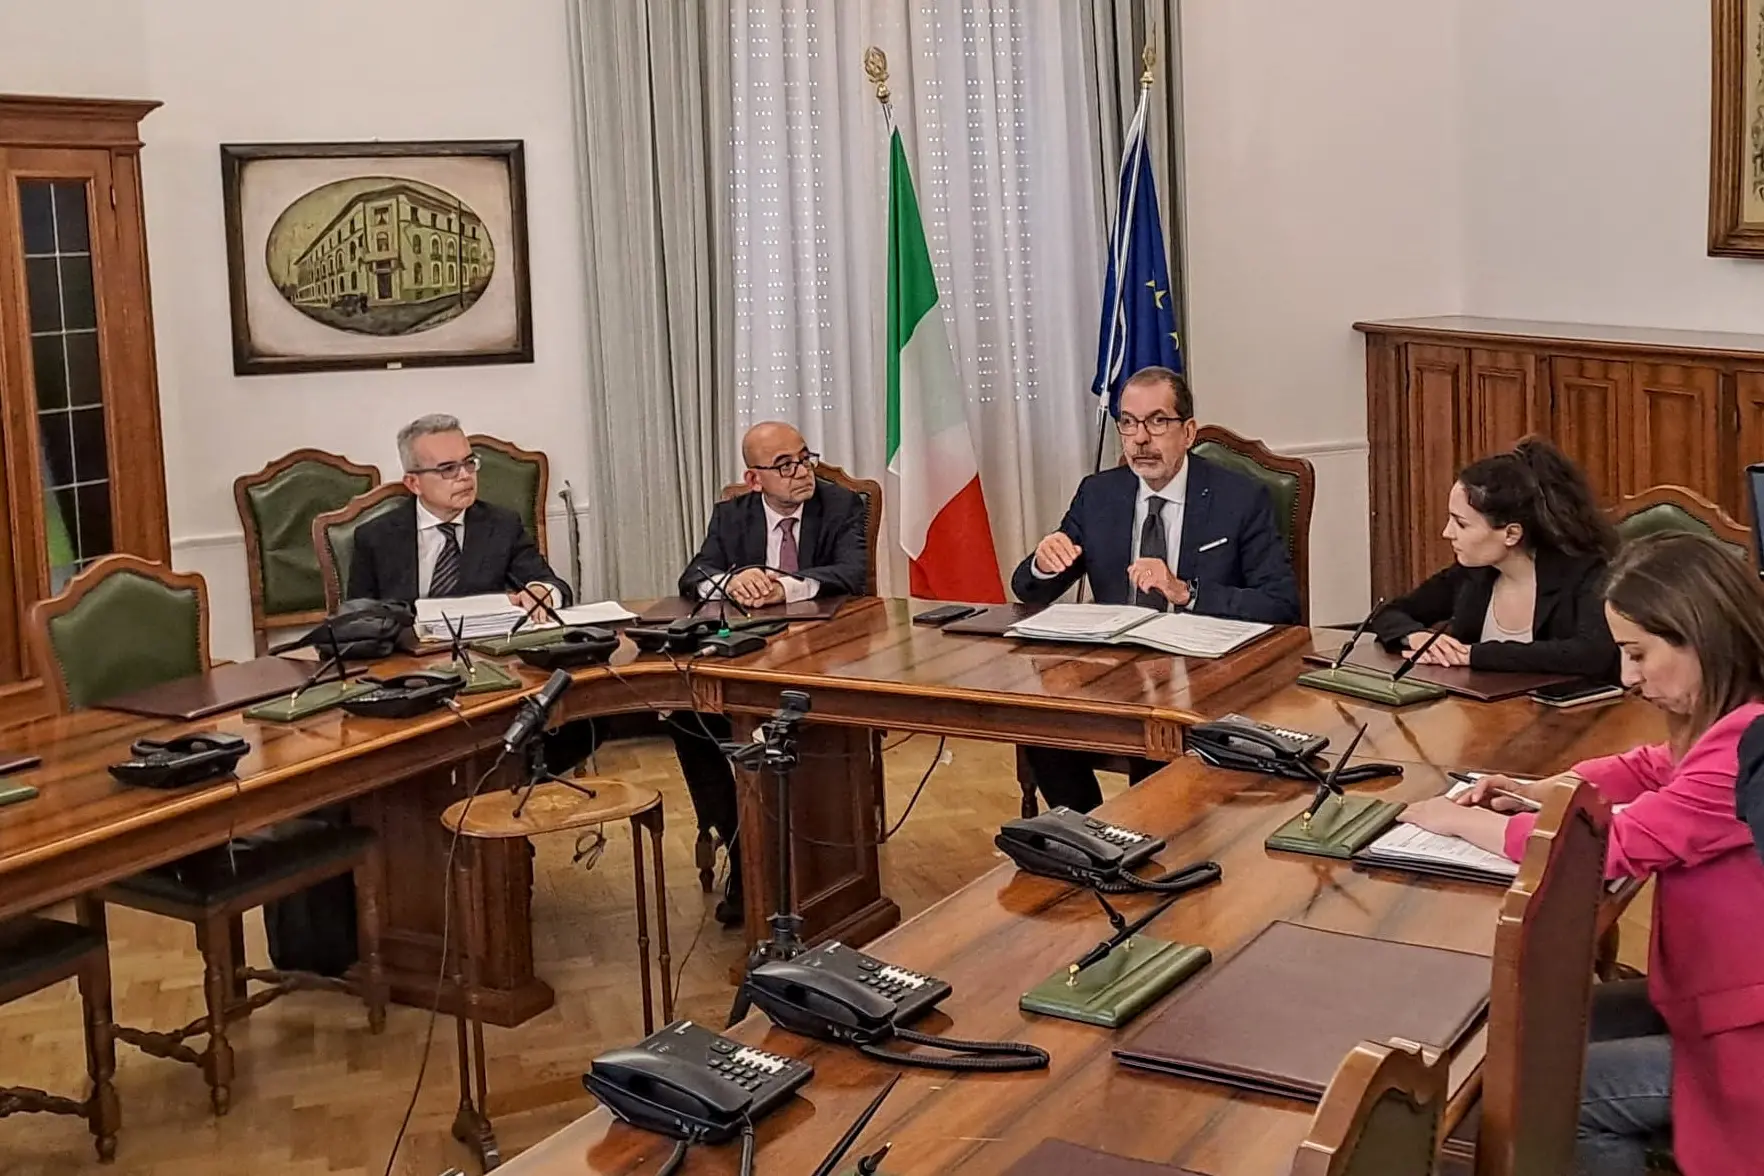 L'incontro in prefettura con il ministro Salvini (foto Locci)